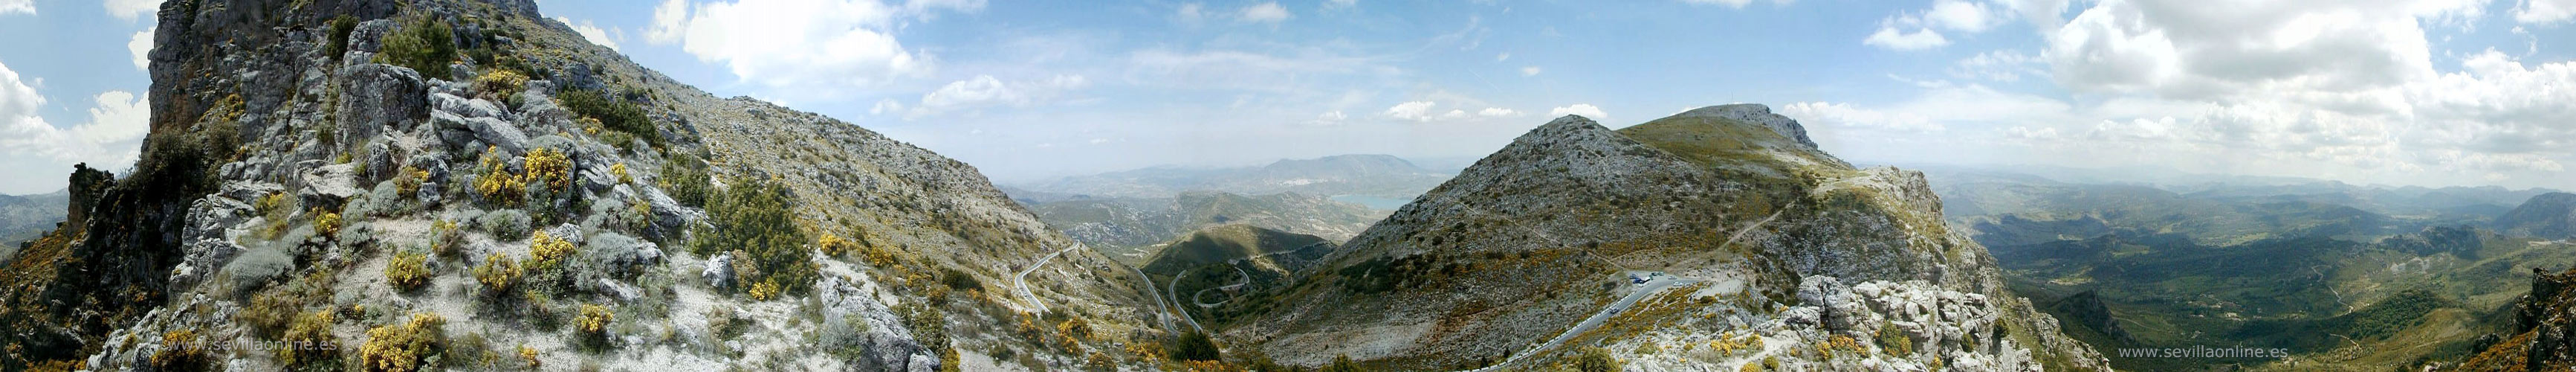 Uitzicht over het Sierra de Grazalema natuurgebied, provincie Cadiz - Andalusië, Spanje. 